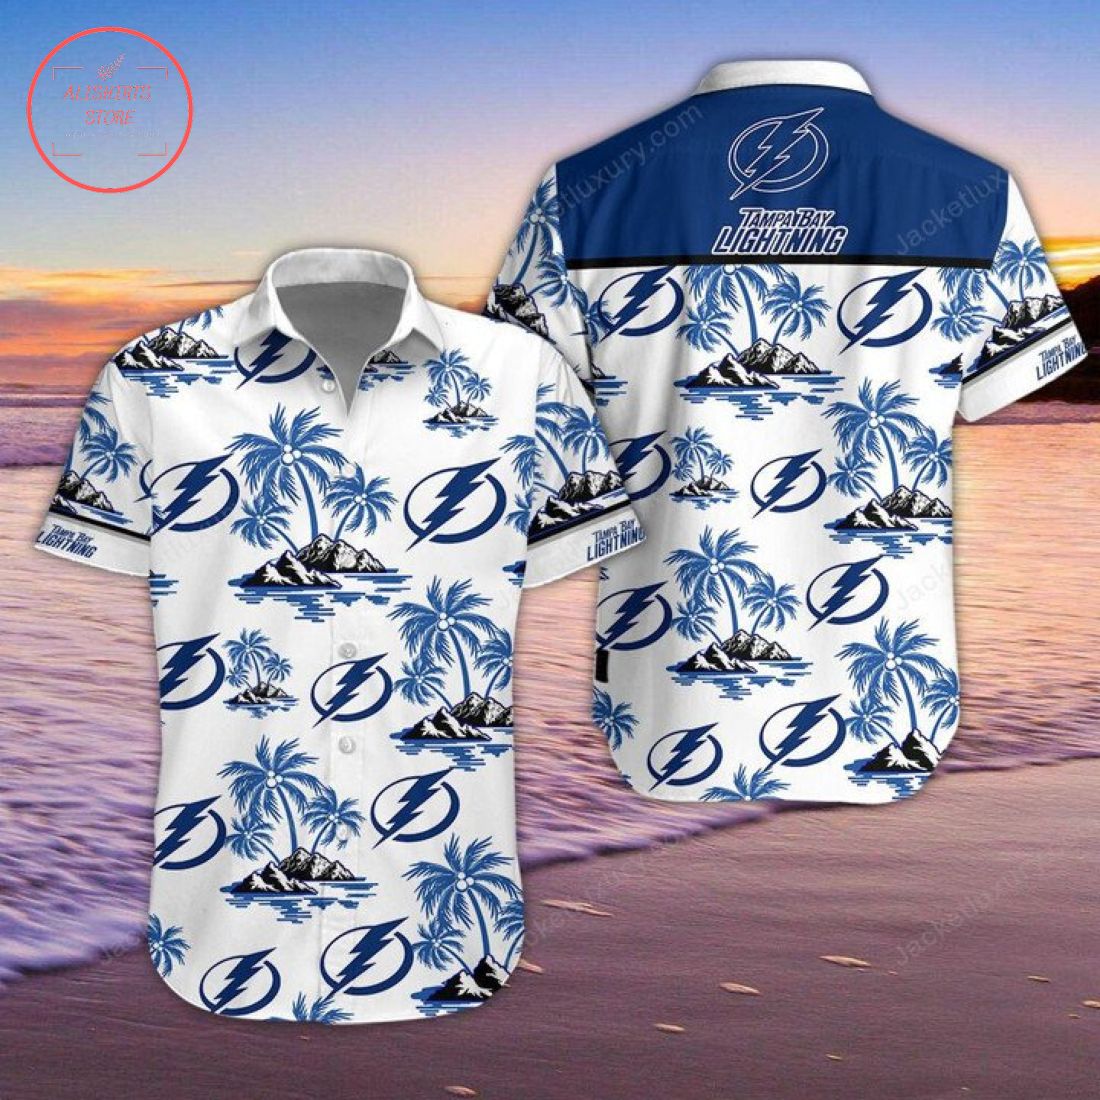 Tampa Bay Lightning Hawaiian Shirt and Shorts